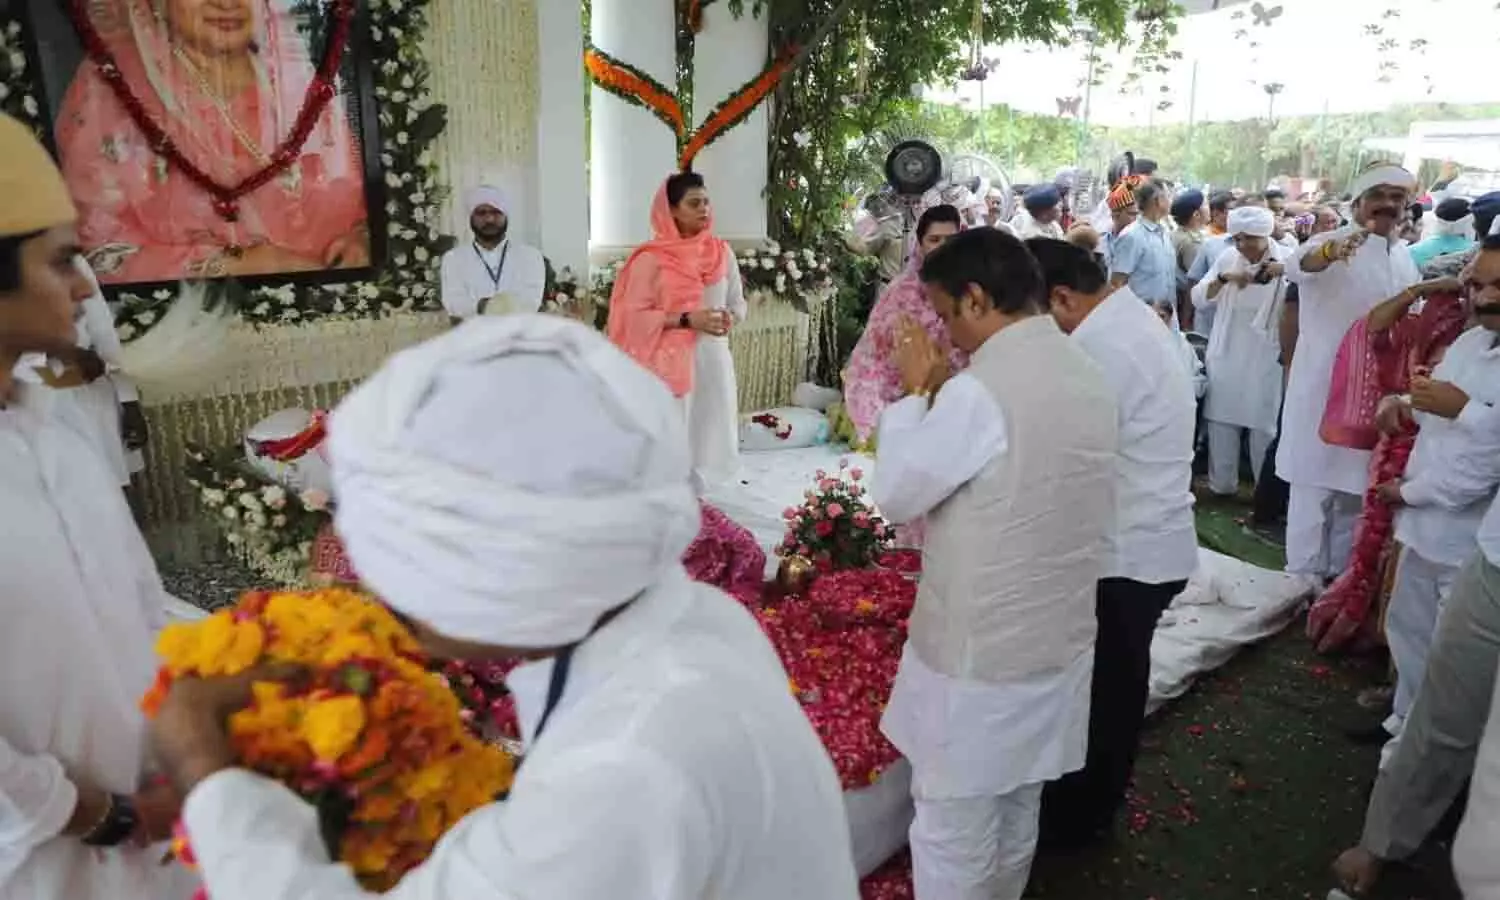 उप मुख्यमंत्री राजेंद्र शुक्ल ने राजमाता माधवी राजे सिंधिया के पार्थिव शरीर के दर्शन कर की श्रद्धांजलि अर्पित